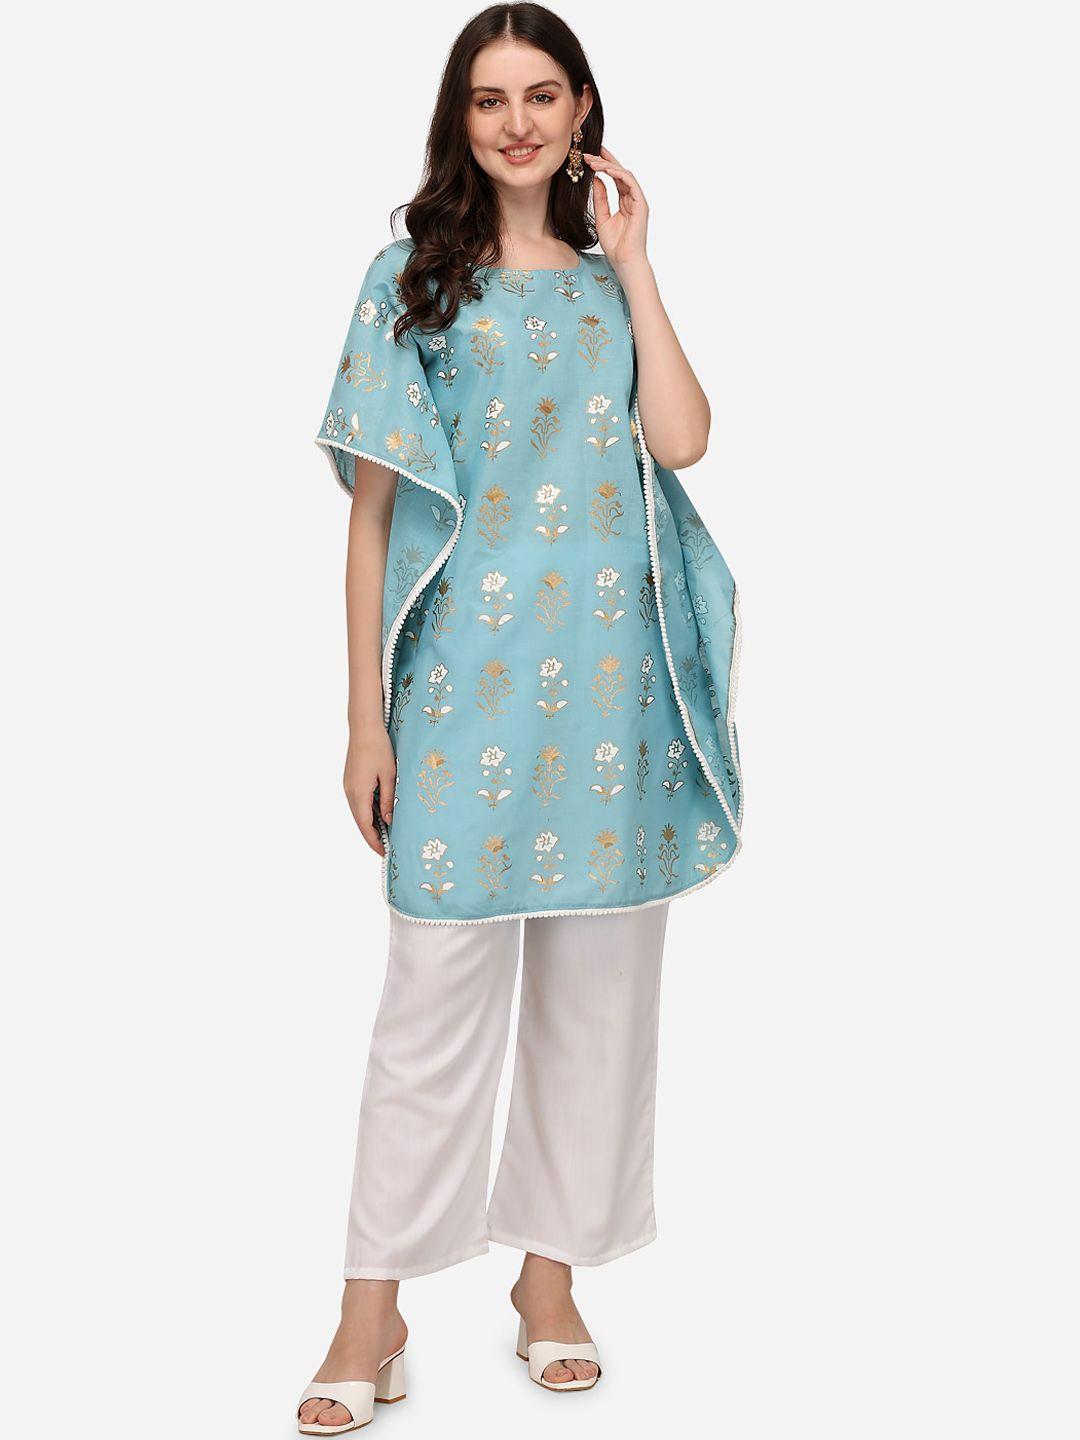 sitaram designer women turquoise blue foil printed extended sleeves kaftan kurta